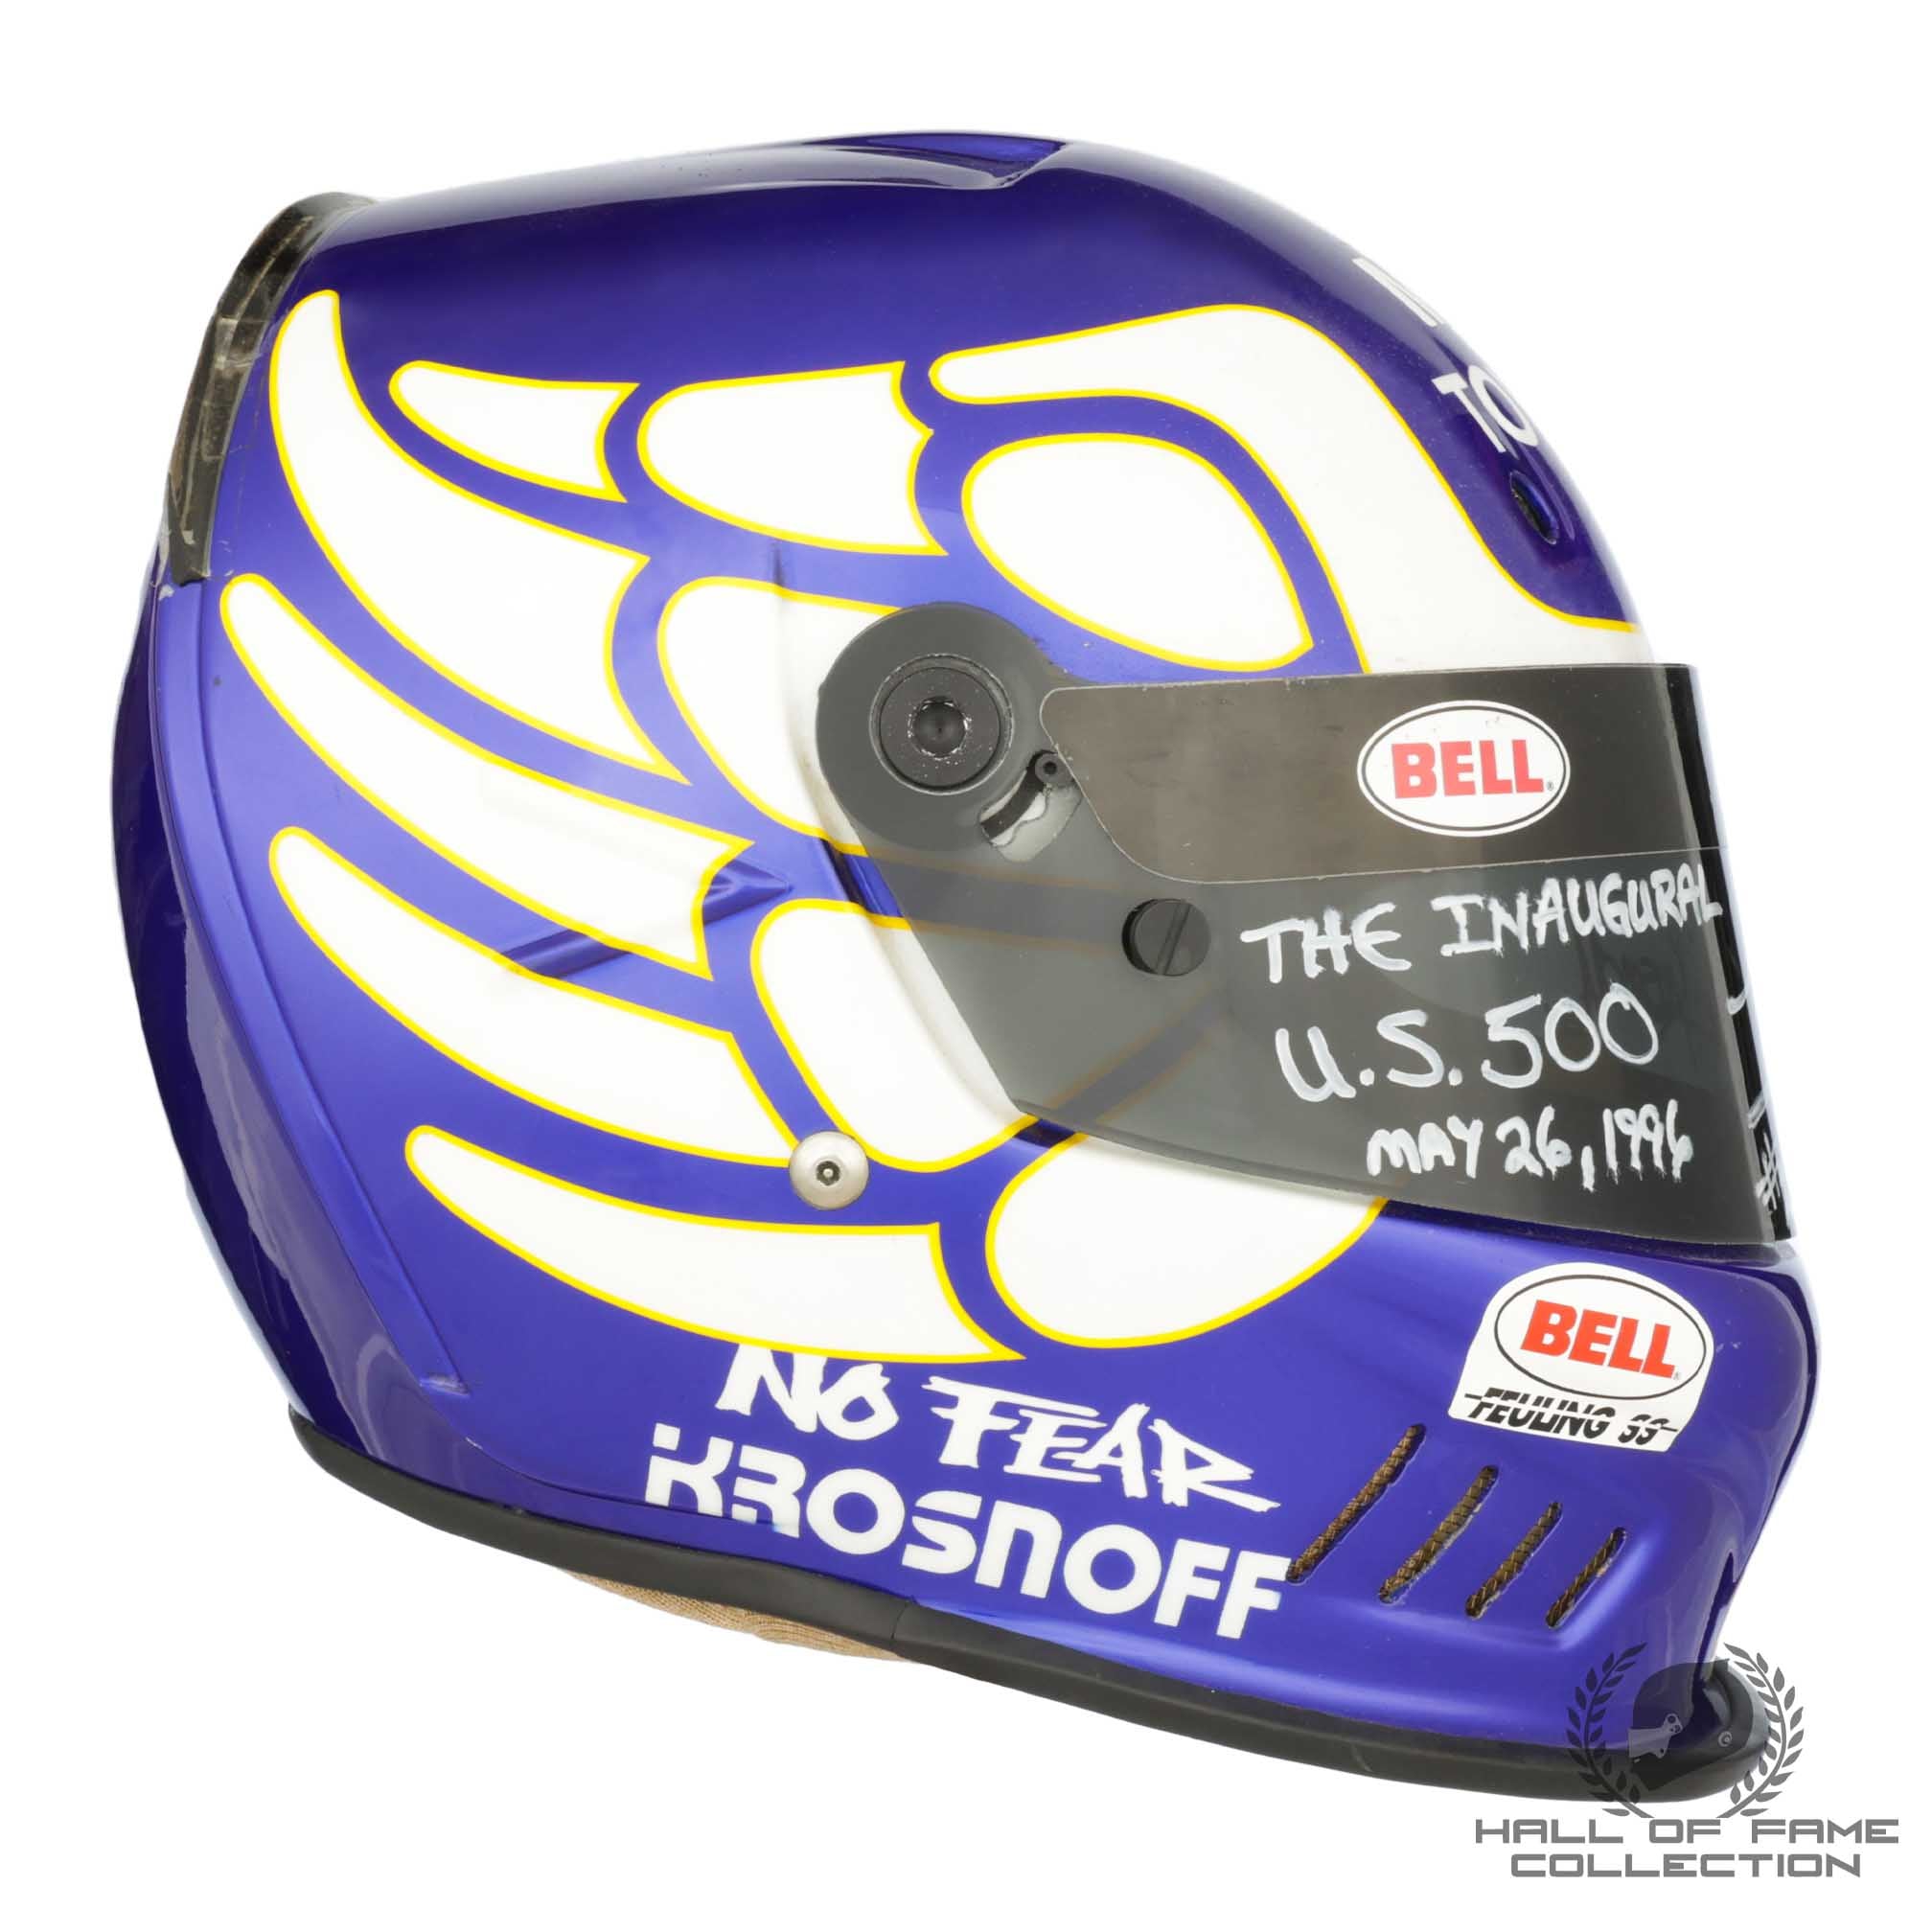 1996 Jeff Krosnoff Signed Race Used Bell Feuling Arciero-Wells Racing CART Series Helmet